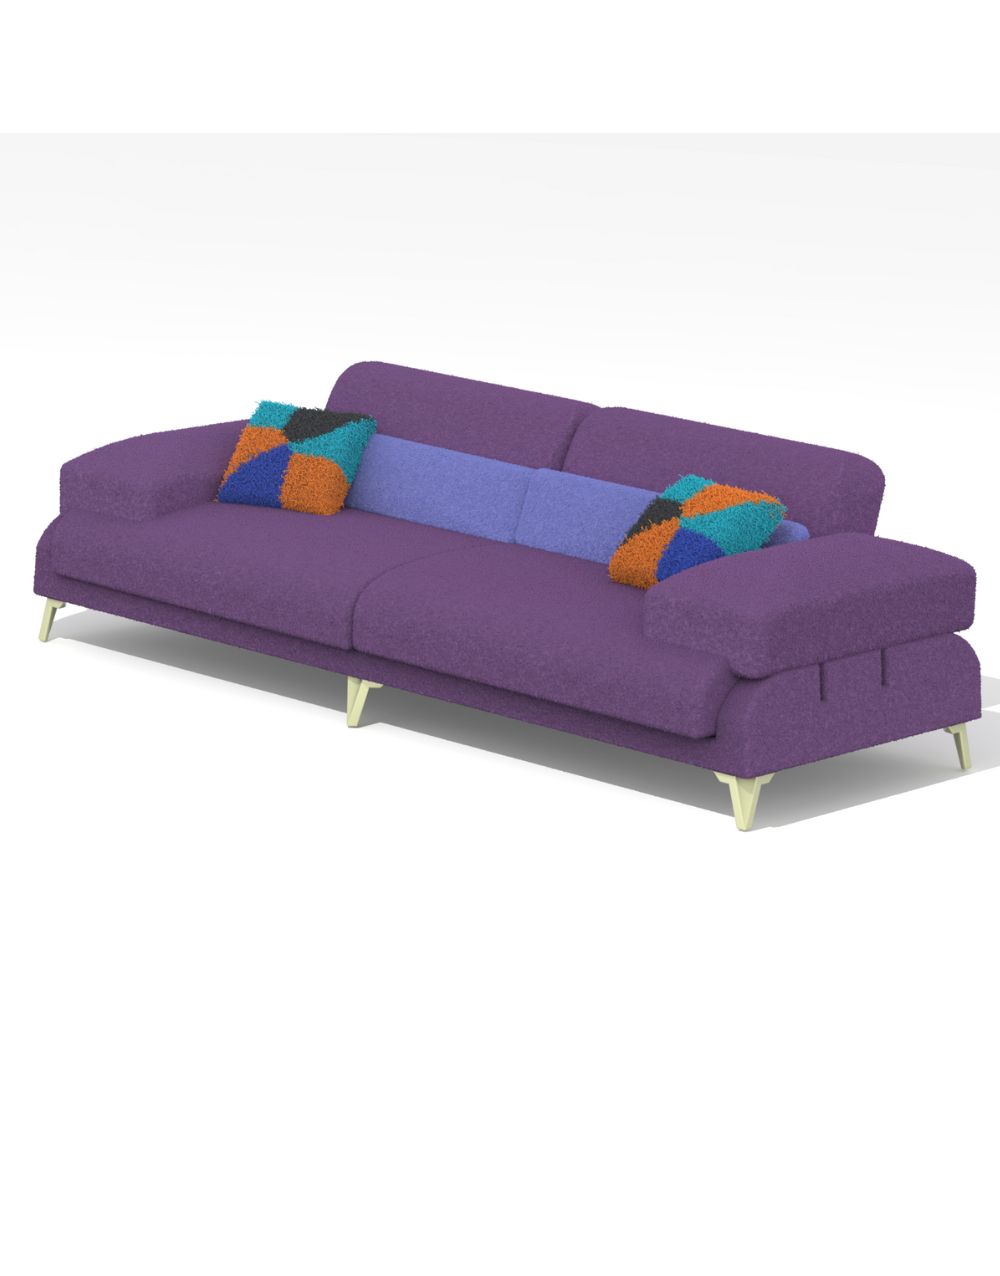 Cilova-sofa